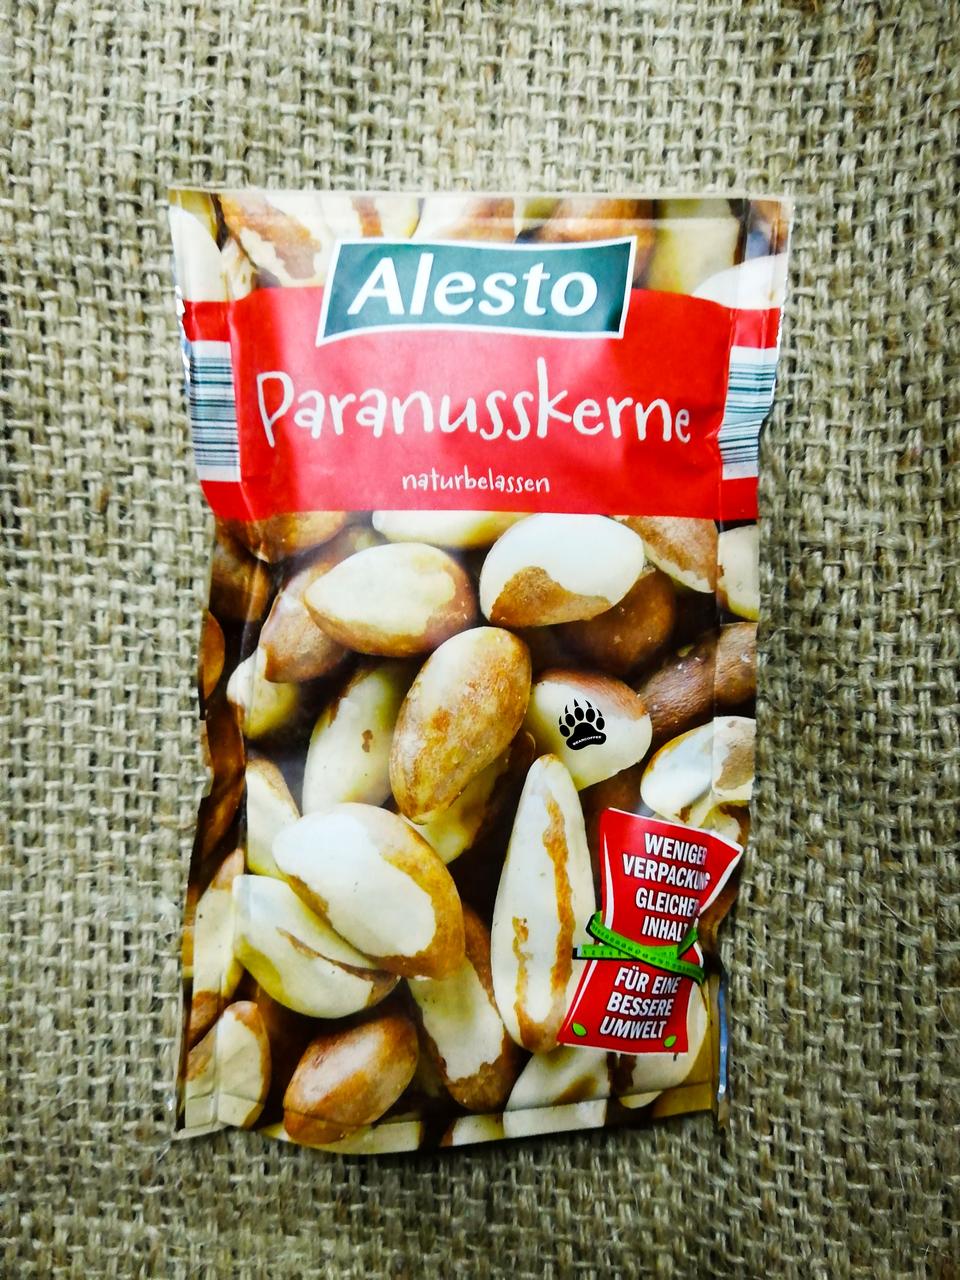 Alesto Paranusskerne 200 gramm Бразильский орех